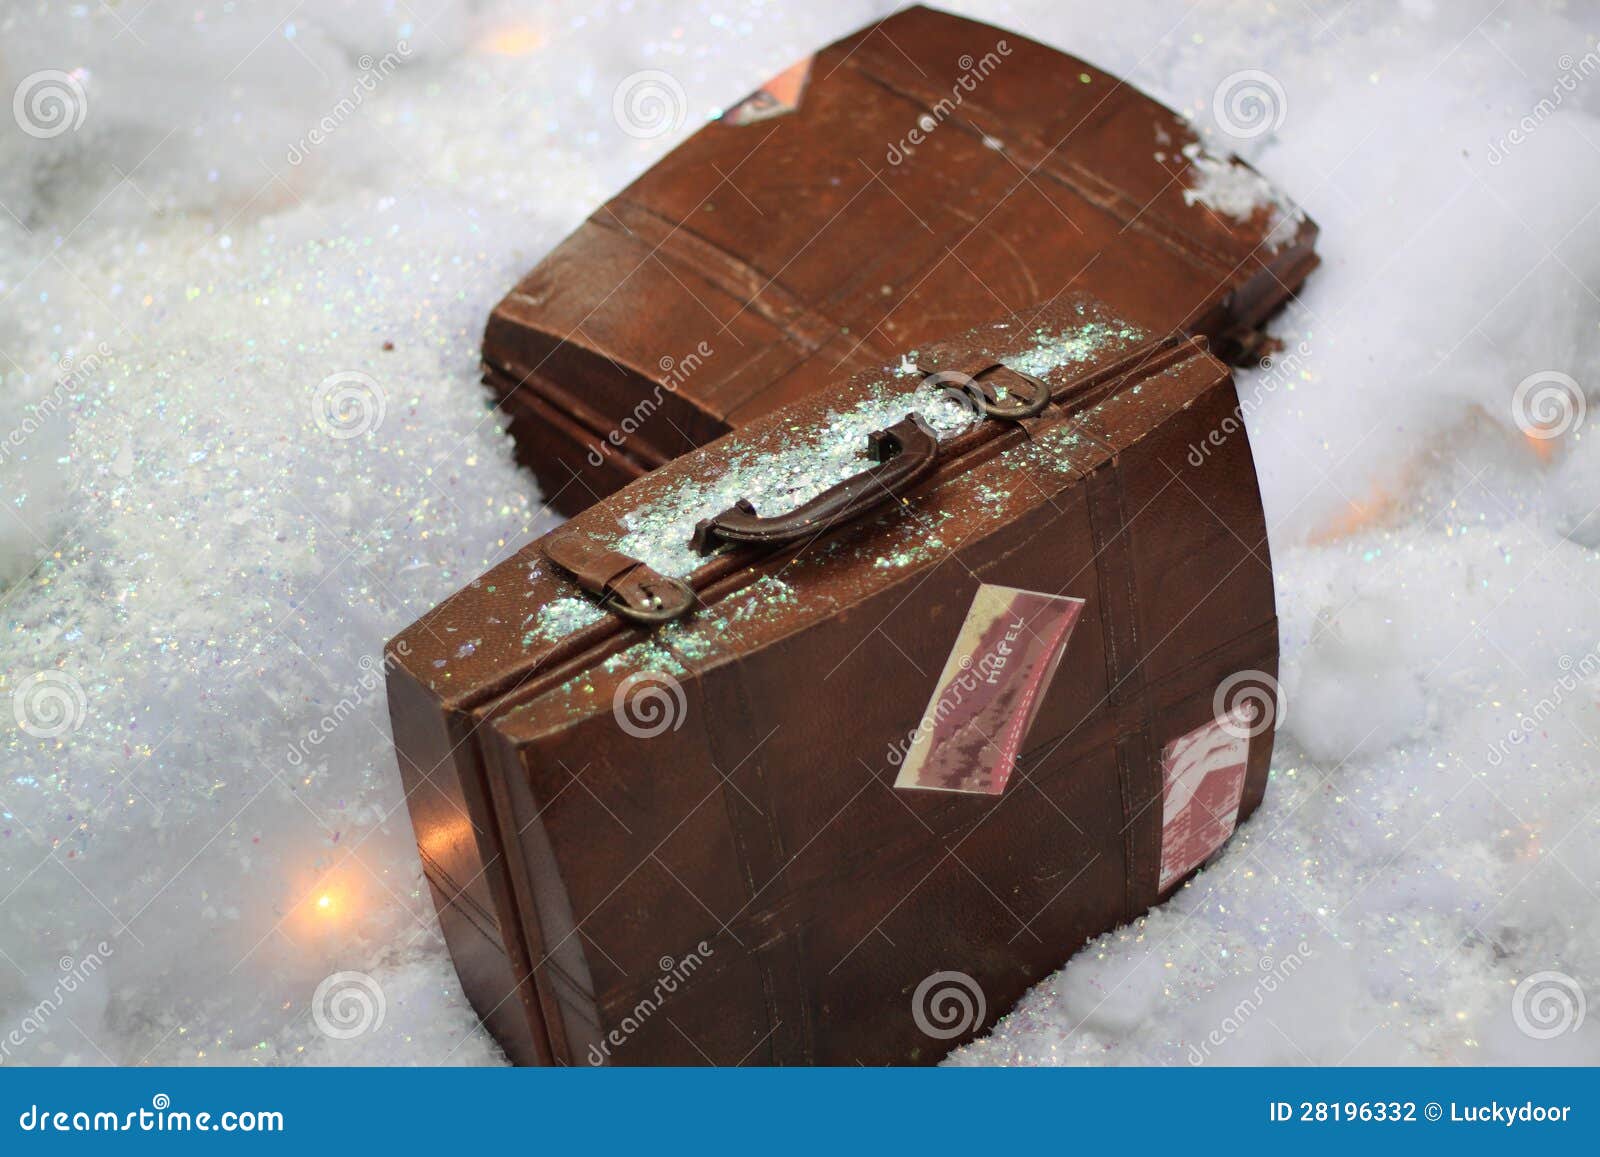 Vieille valise de course. Deux vieilles valises de course sur la neige artificielle